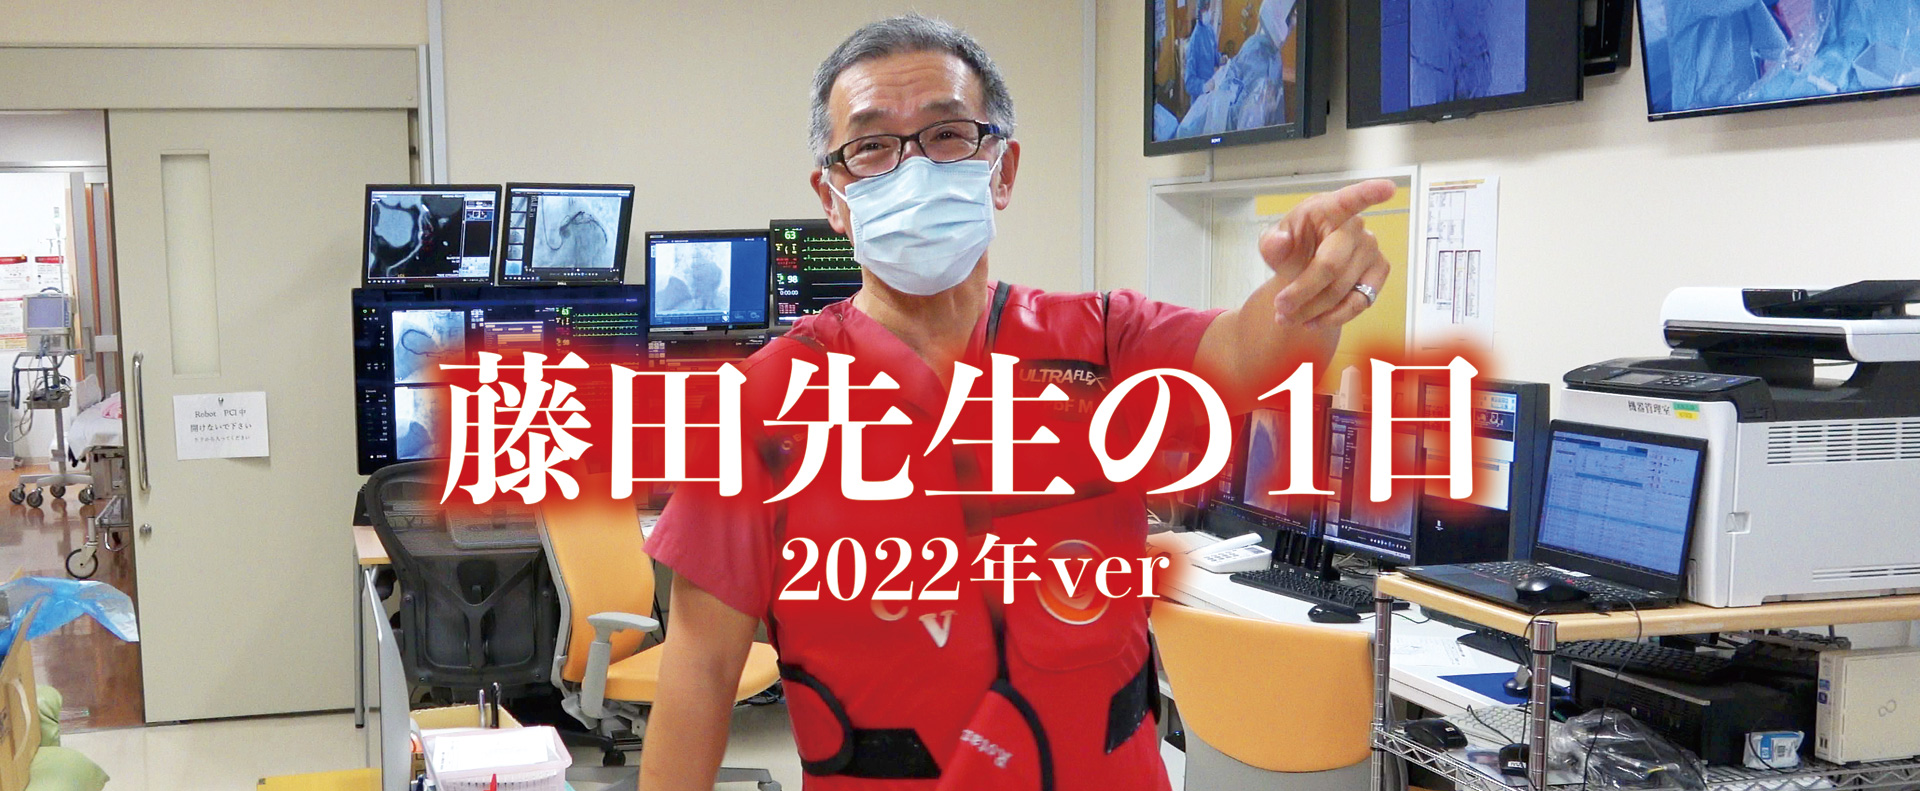 藤田先生の一日 2022年ver